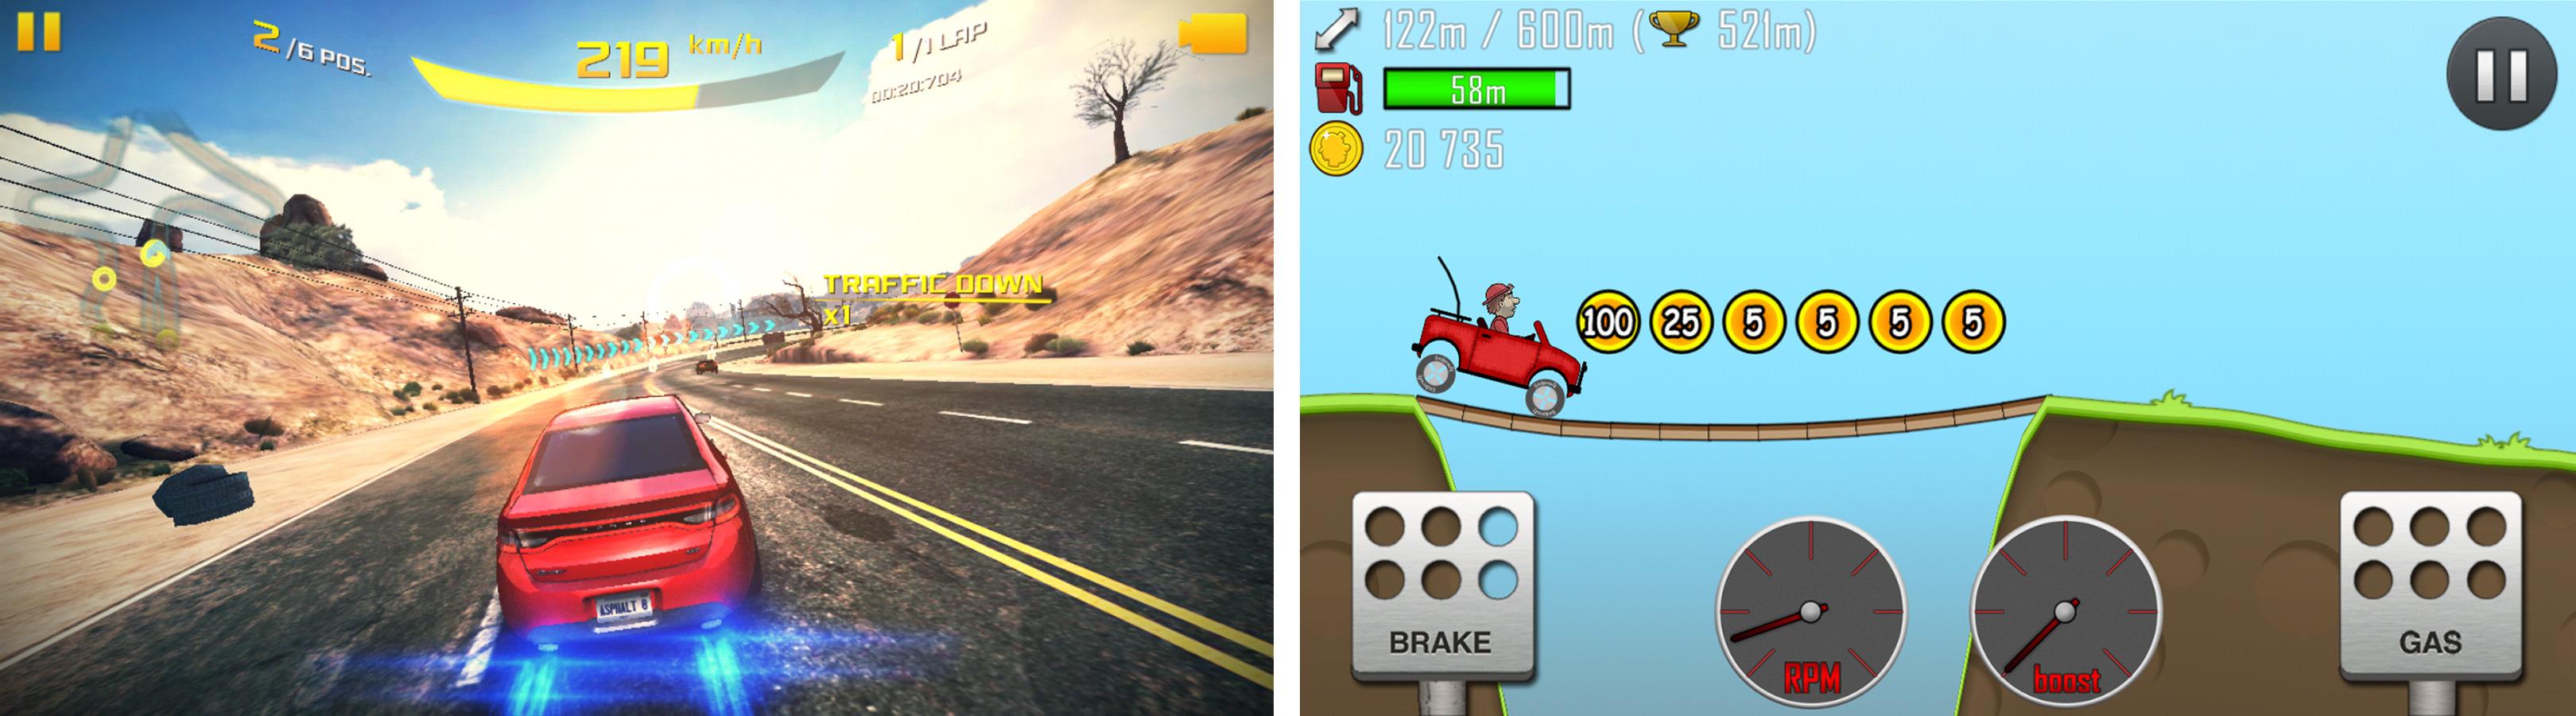 Spill som Hill Climb Racing (høyre) egner seg godt på J5.